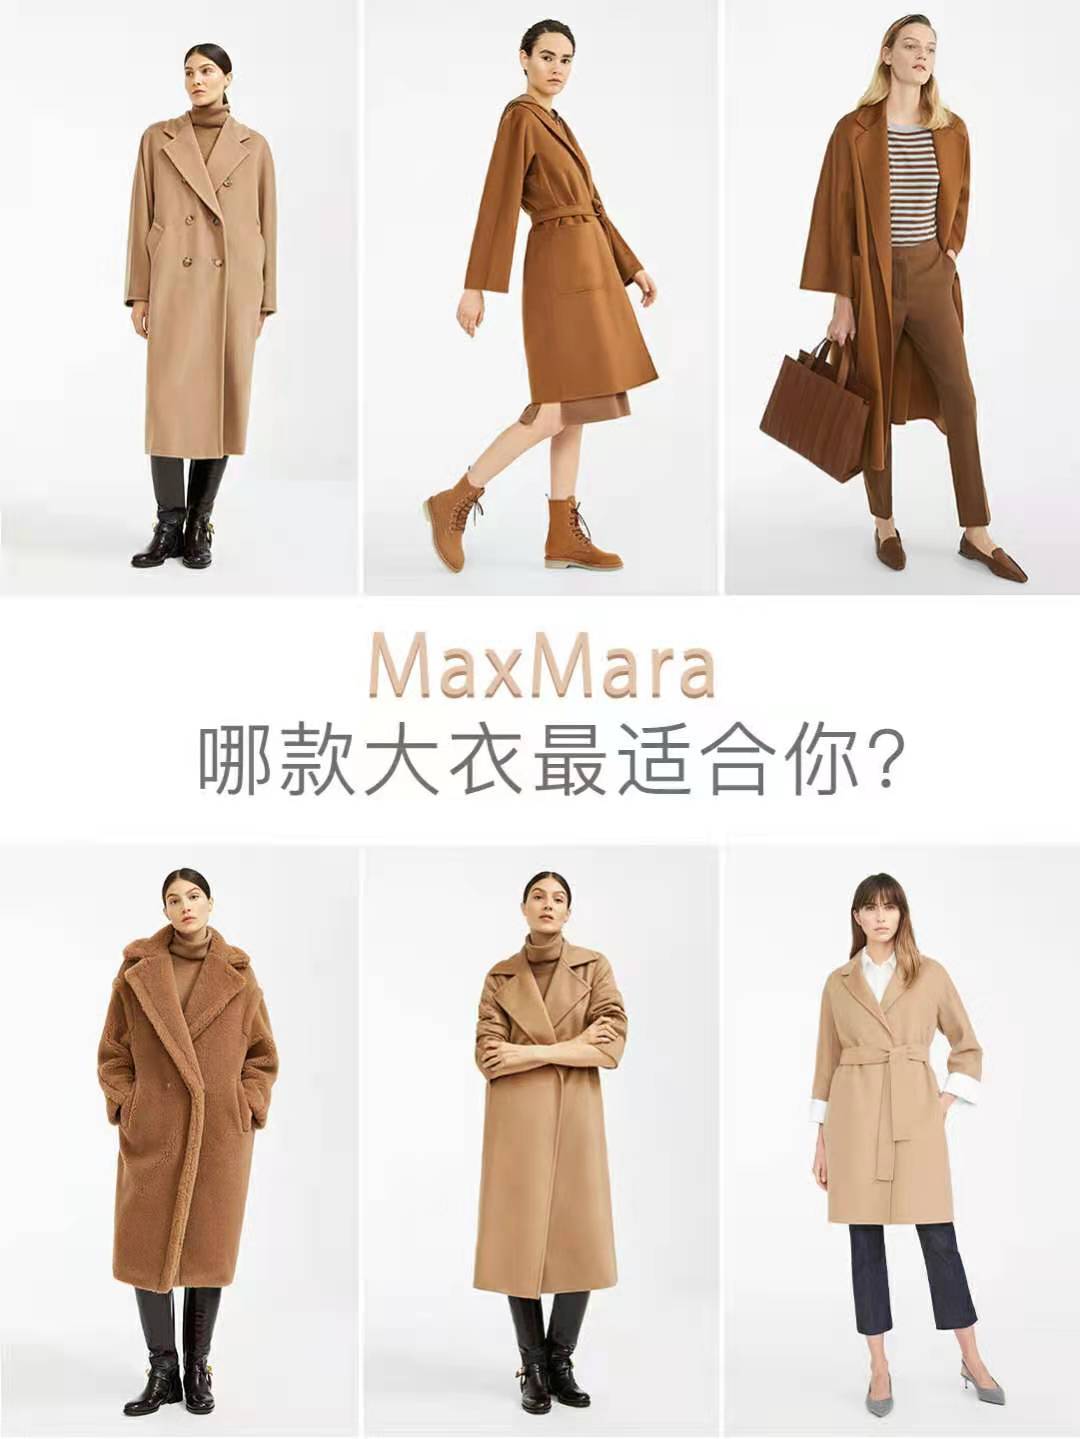 一件大衣就要上万元的maxmara,到底有什么稀罕的?